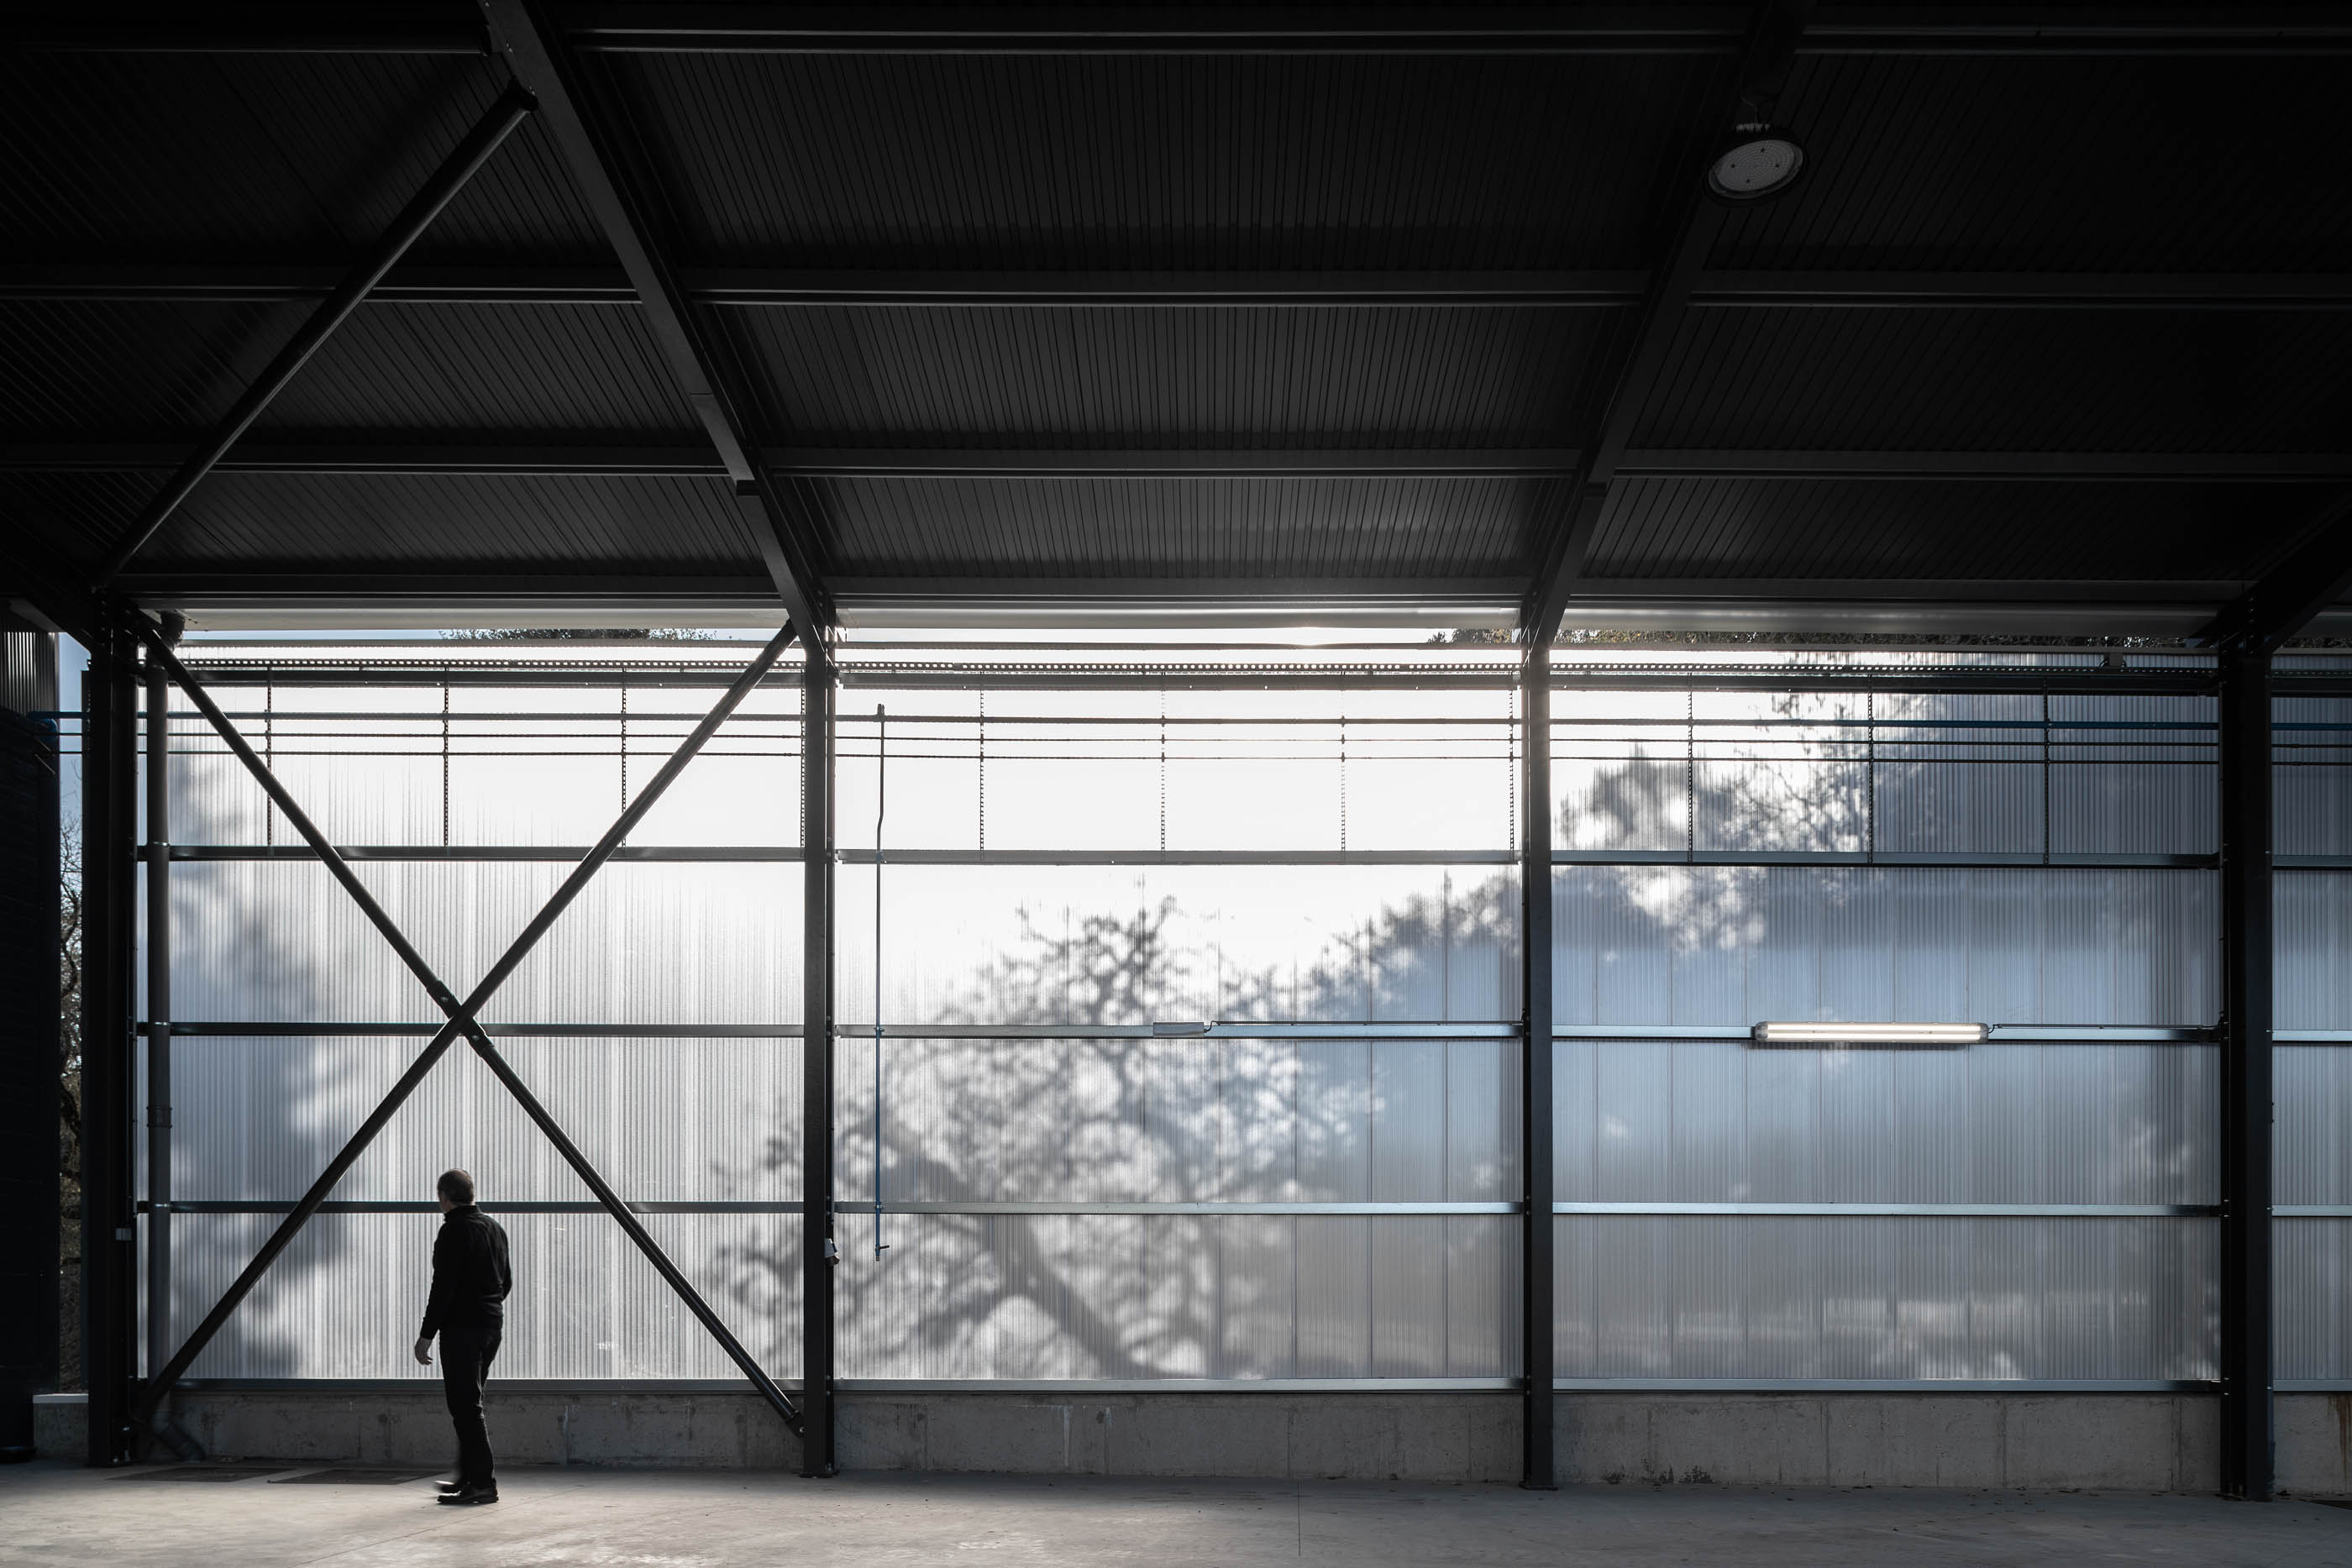 Edificio Industrial Prf Do Atelier Impare Arquitectura Com Fotog do fotografo Ivo Tavares Studio